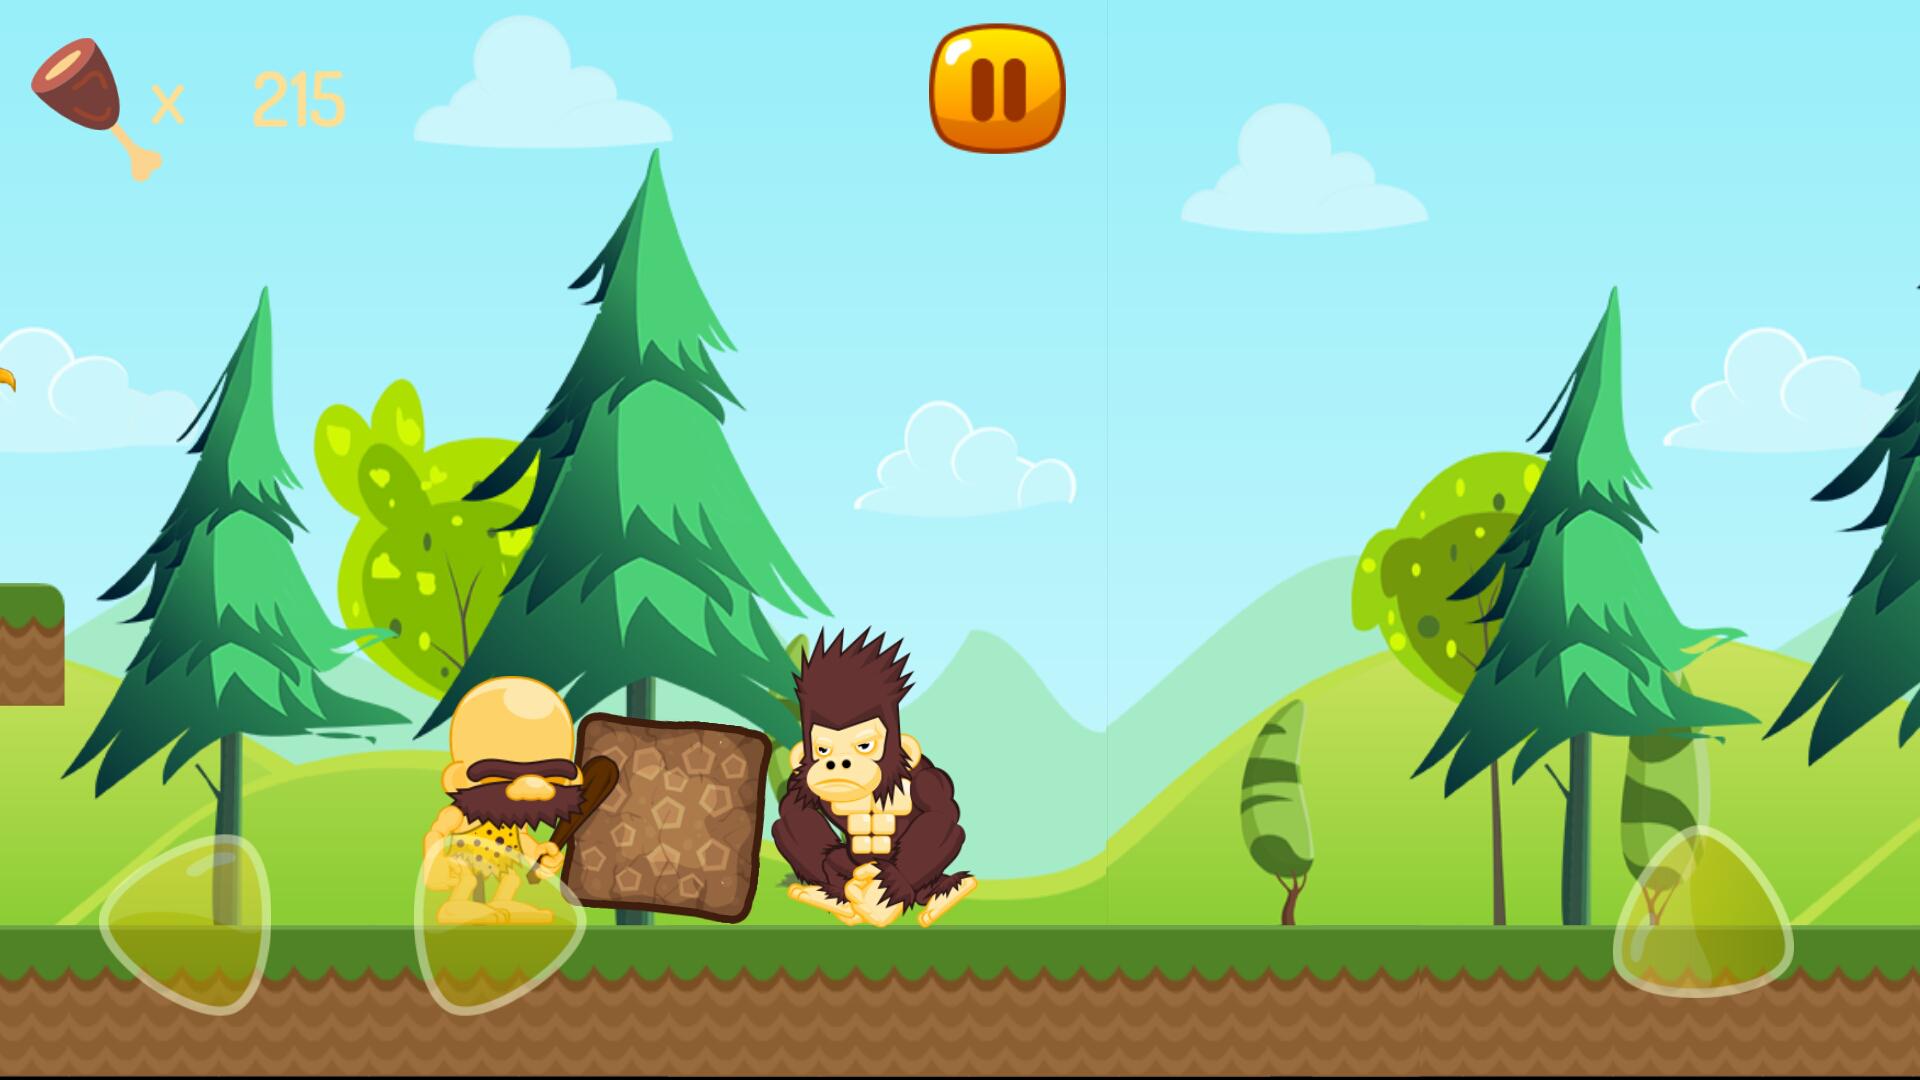 لعبة رجل الغابة السوبر for Android - APK Download